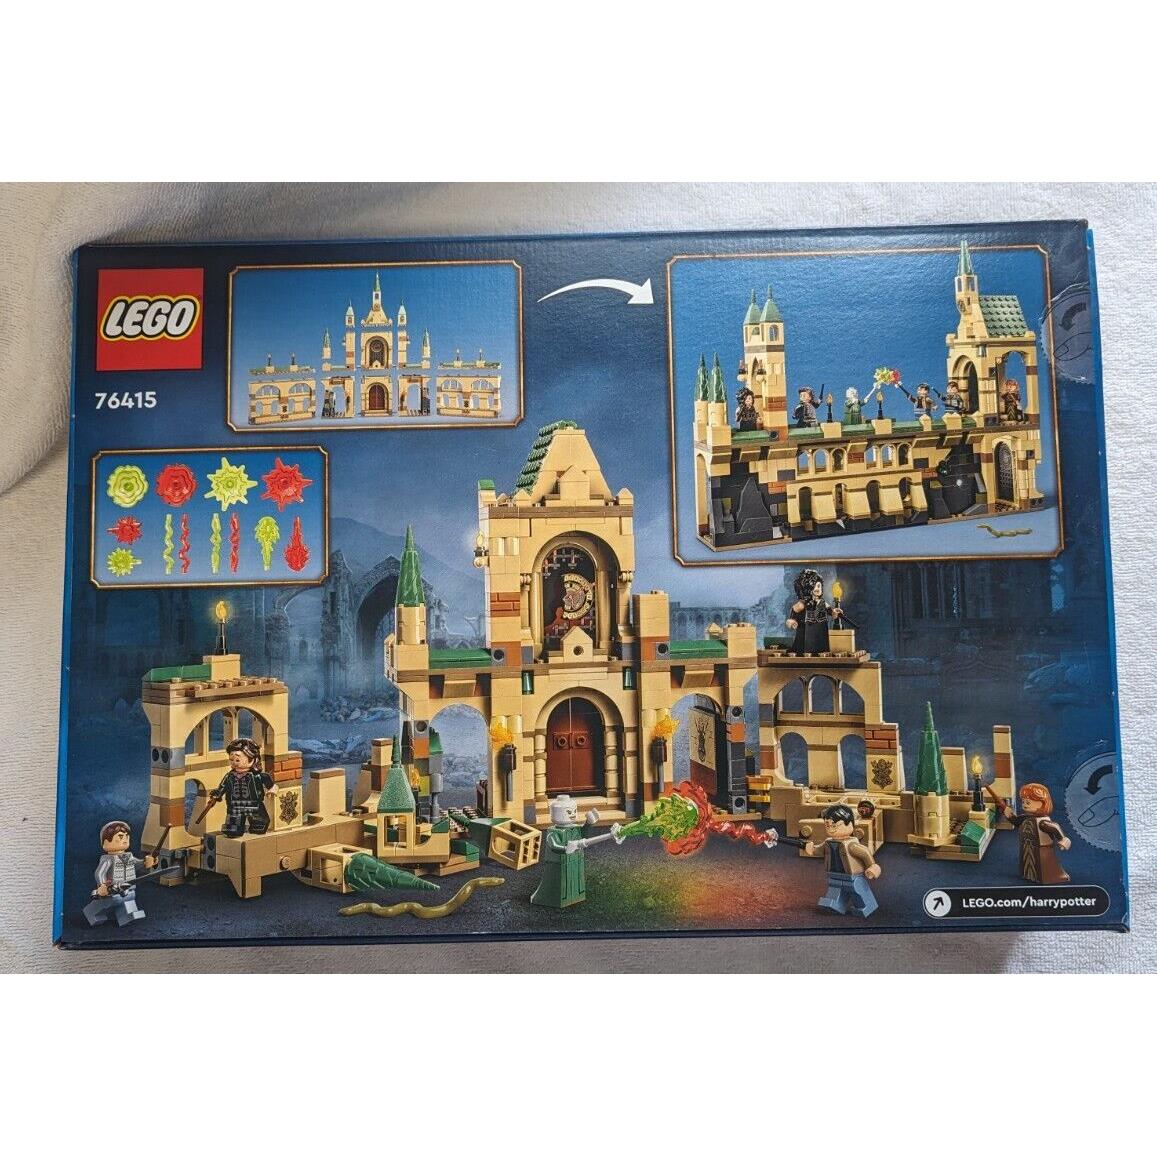 Lego Harry Potter The Battle of Hogwarts 76415 Toy Brick